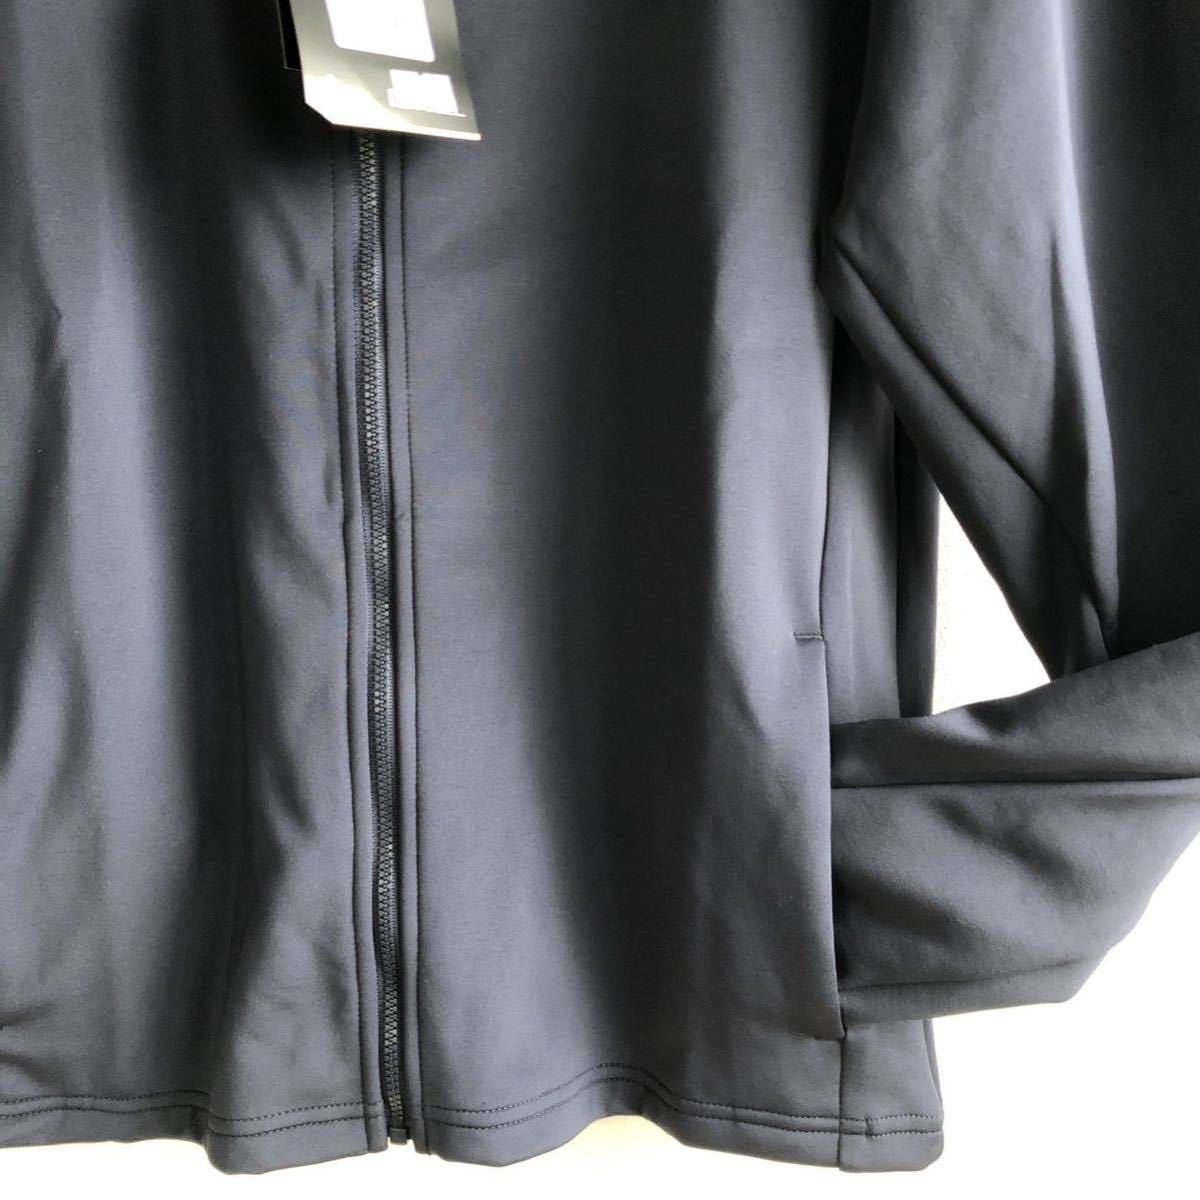  Puma спортивная куртка темно-синий L обычная цена 6600 иен стрейч 521854